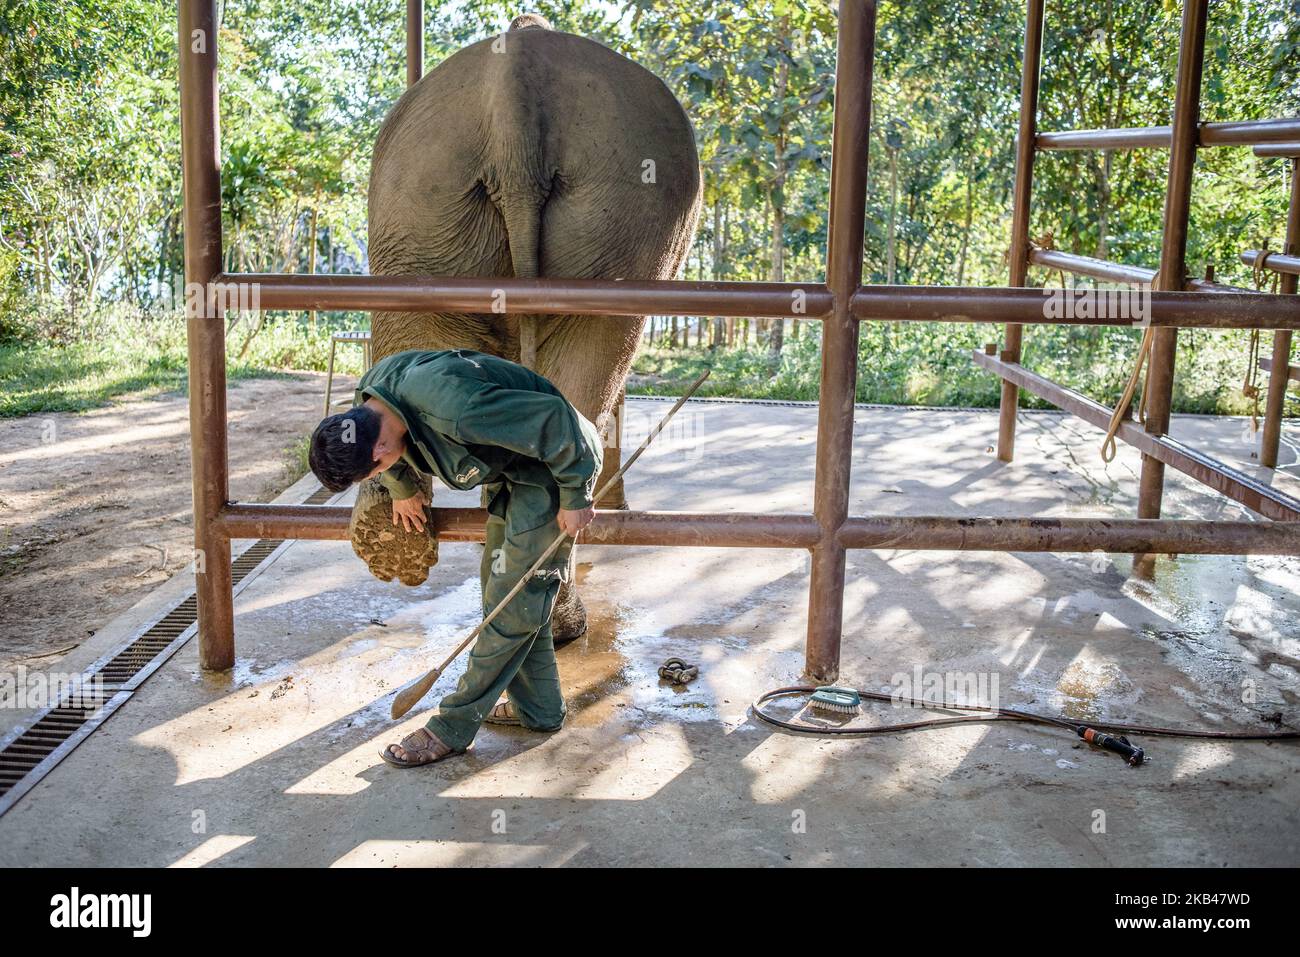 Un éléphant fait l'objet d'un examen quotidien à l'hôpital du Centre de conservation de l'éléphant, Sayaboury, au Laos, en décembre 2018. Le Laos était connu sous le nom de «terre d’un million d’éléphants» dans le passé, aujourd’hui, la population d’éléphants du pays compte environ 800 individus. La moitié d'entre eux est composée d'éléphants captifs, et leur nombre est en déclin ; les propriétaires ne sont pas intéressés par les animaux de reproduction (la vache a besoin d'au moins quatre ans de travail pendant sa grossesse et sa lactation), le trafic illégal vers la Chine et d'autres pays voisins continue. Dans ce contexte, The Elephant Conservati Banque D'Images